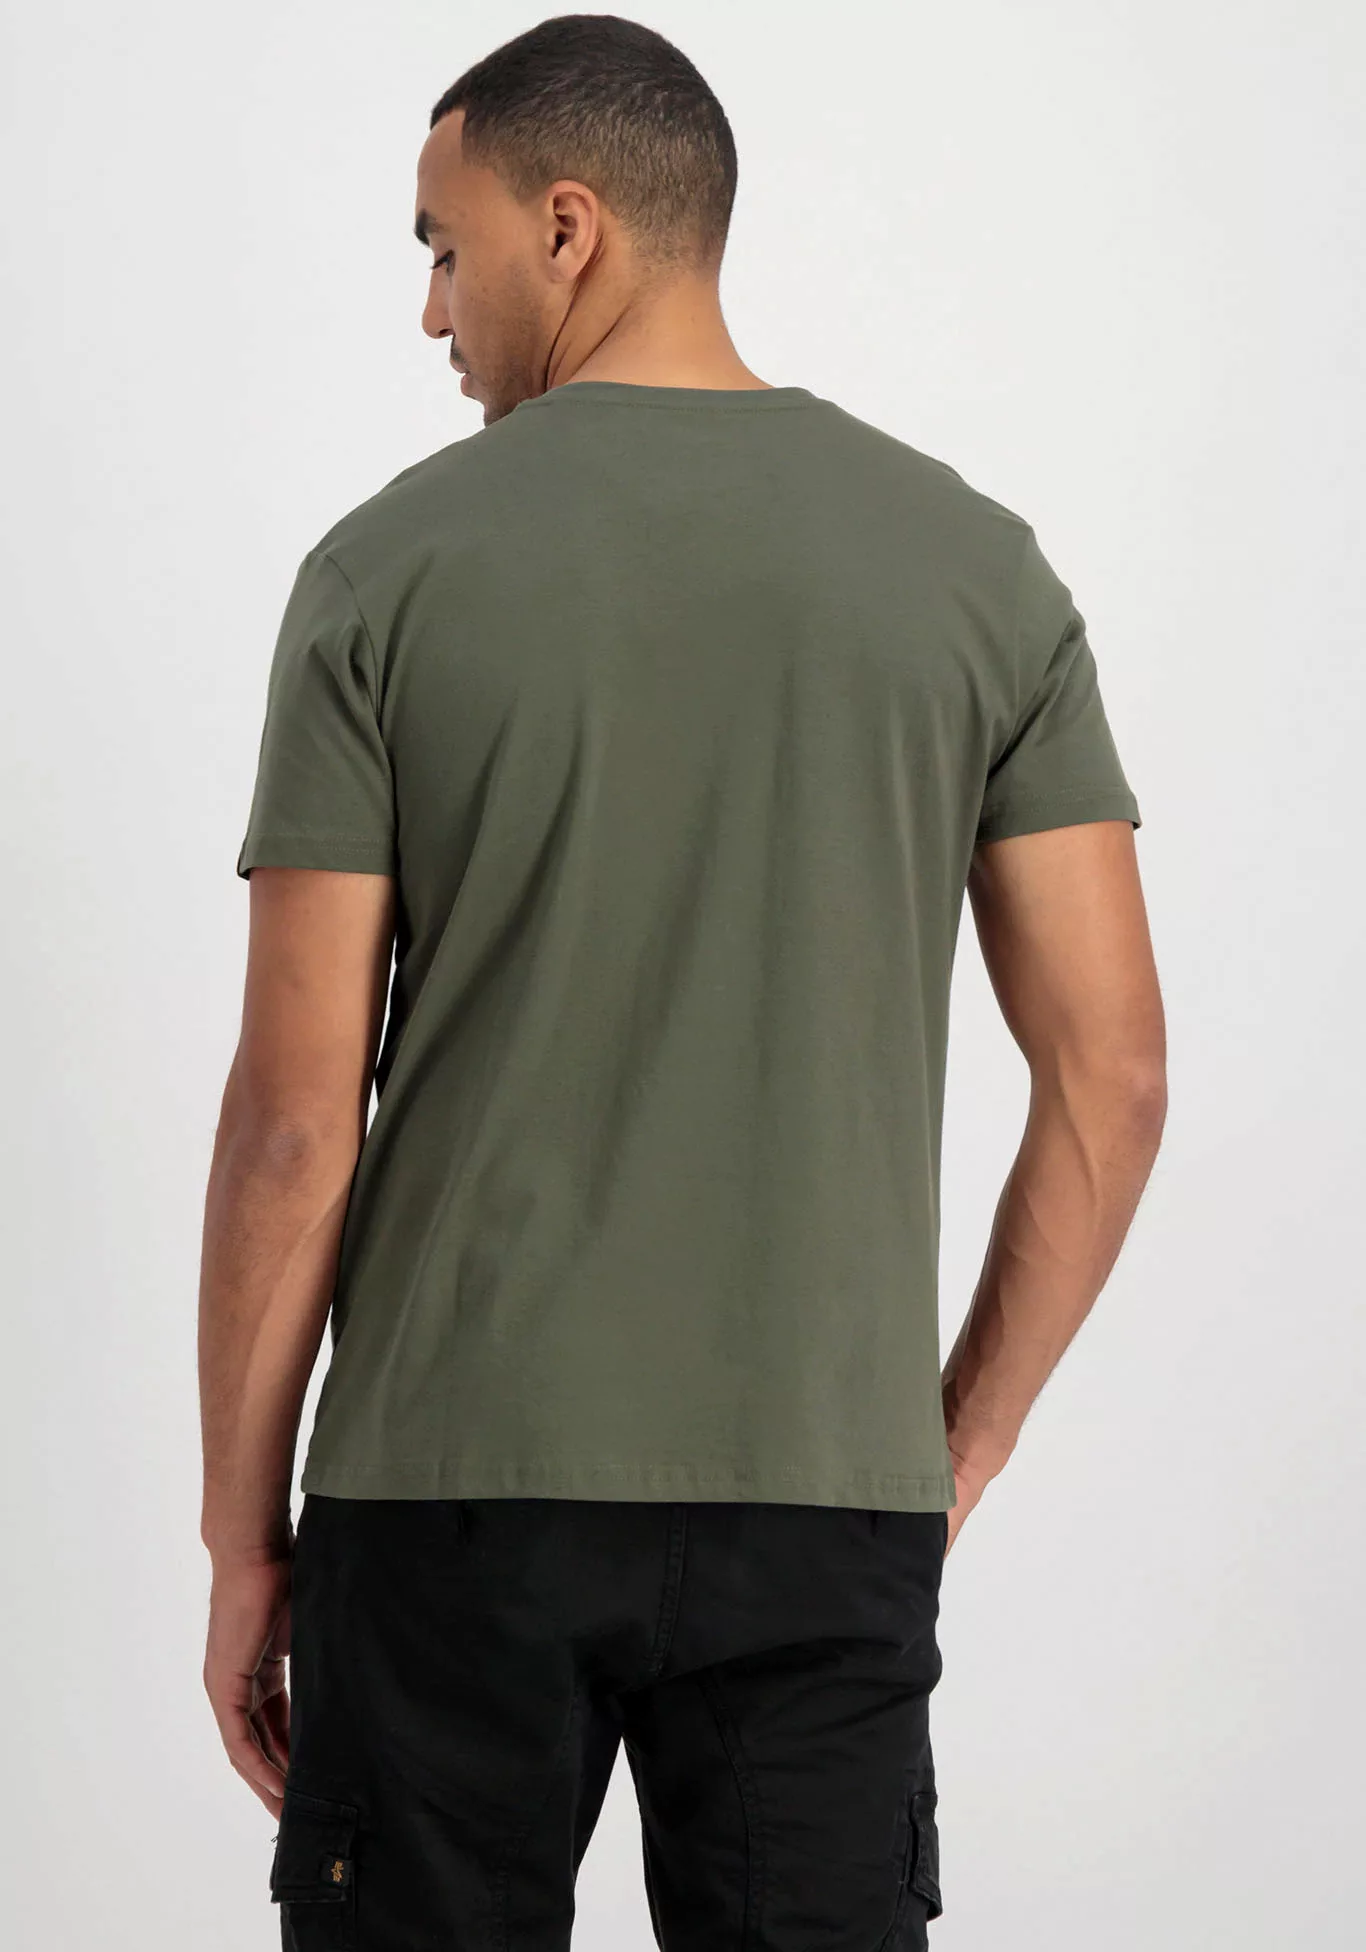 Alpha Industries T-Shirt "Alpha Industries Men - T-Shirts Backprint T Camo" günstig online kaufen